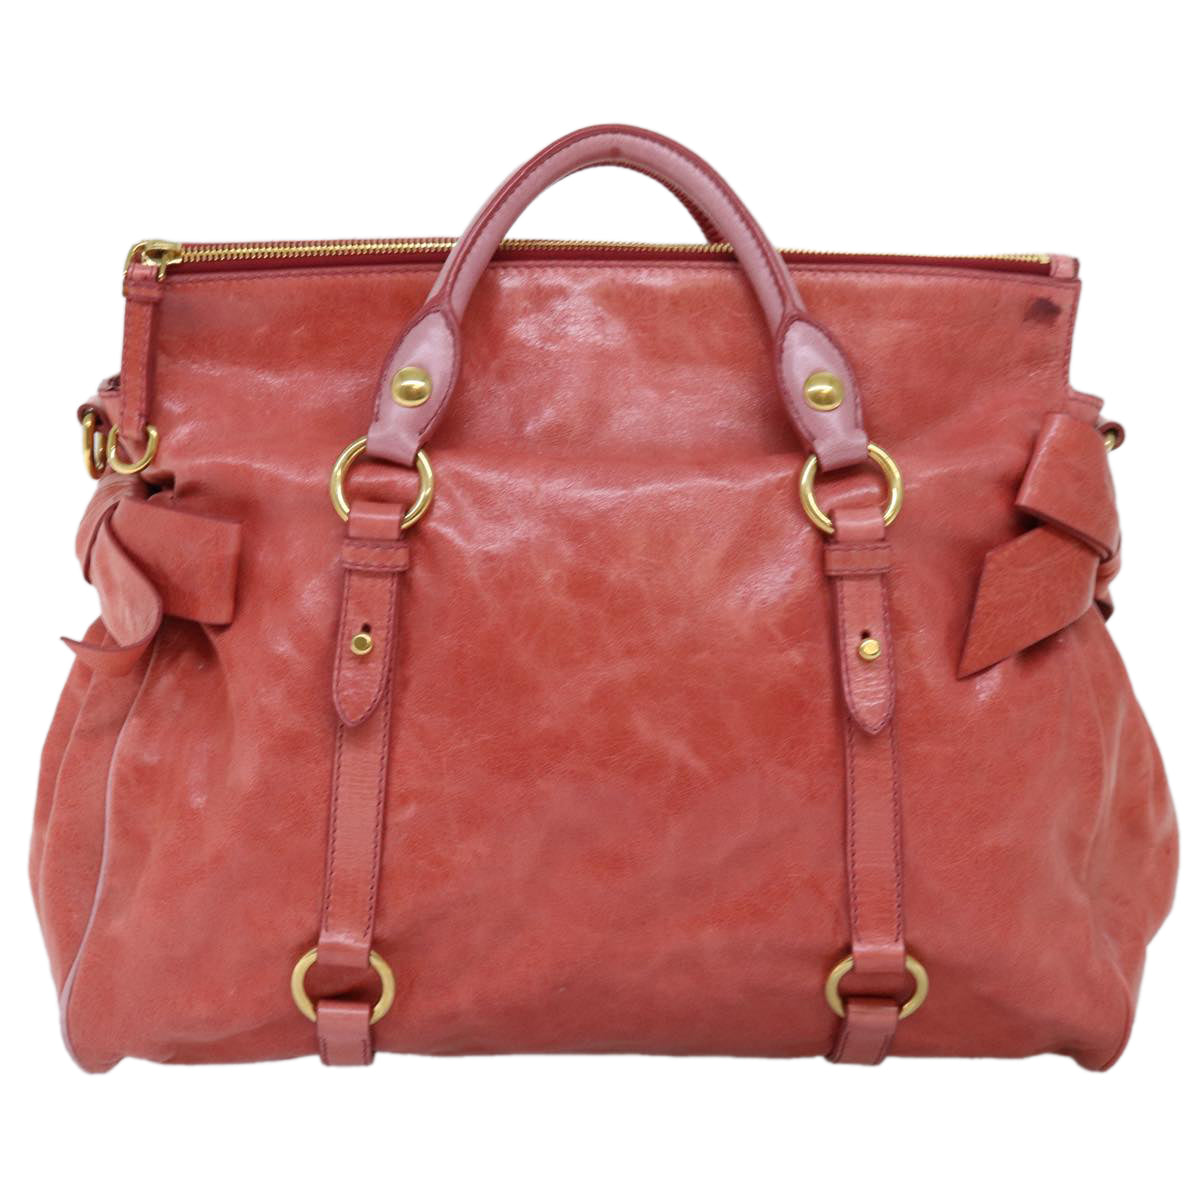 Miu Miu Hand Bag Leather 2way Pink Auth am6140 - 0